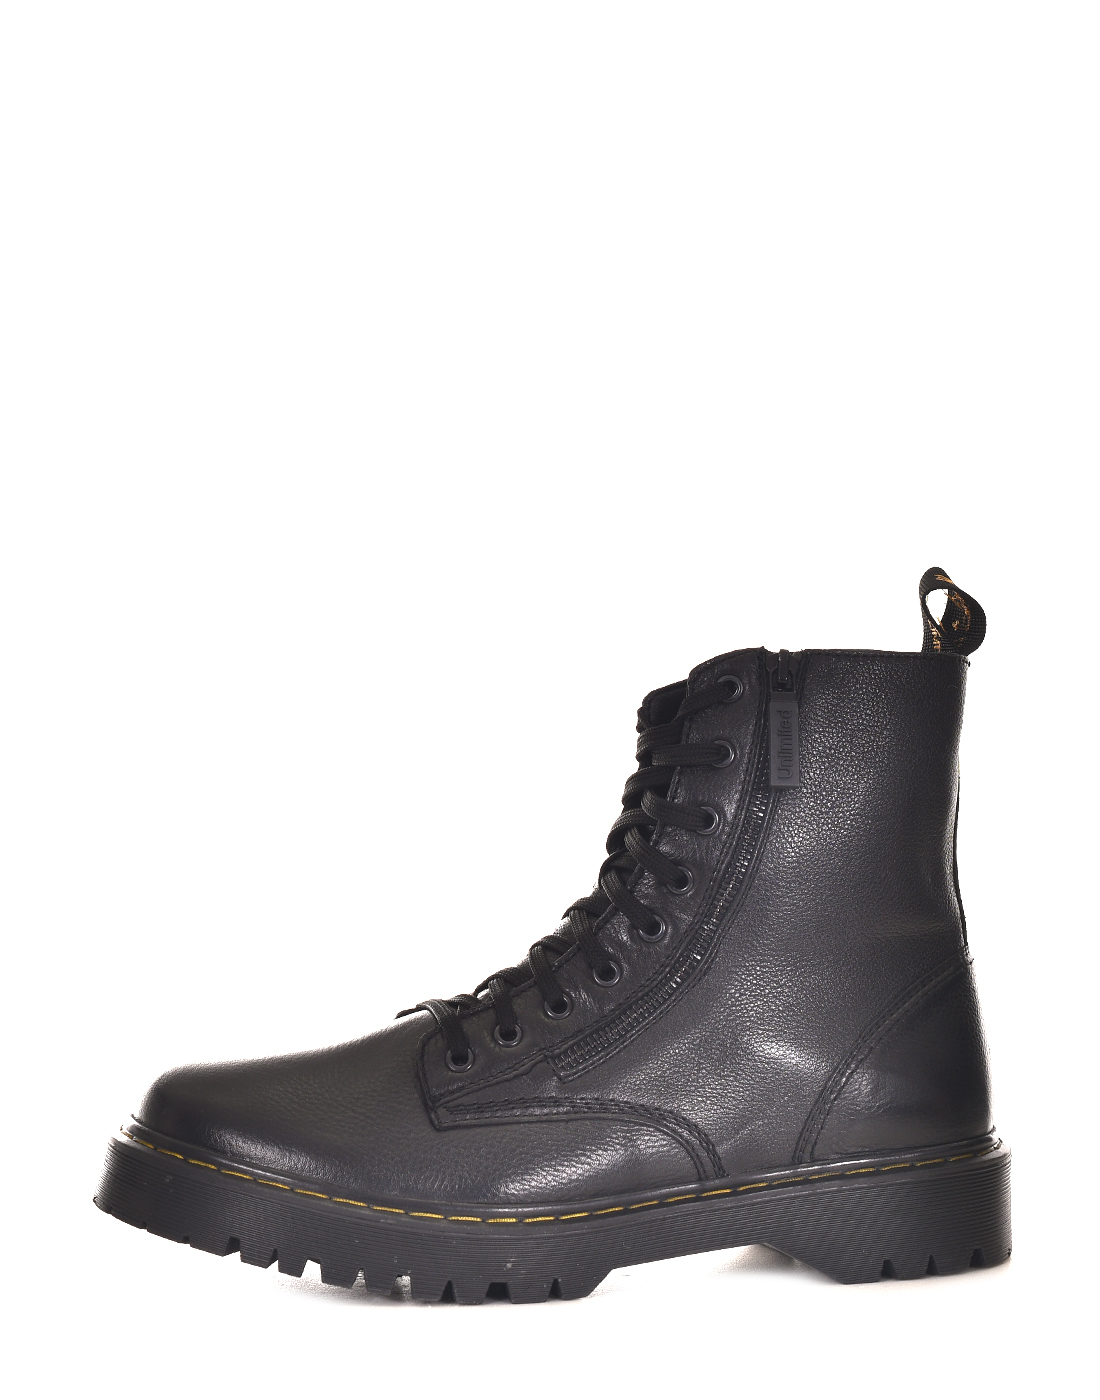 Ботинки мужские C.T.UNLTD М539#35чп черные 41 RU